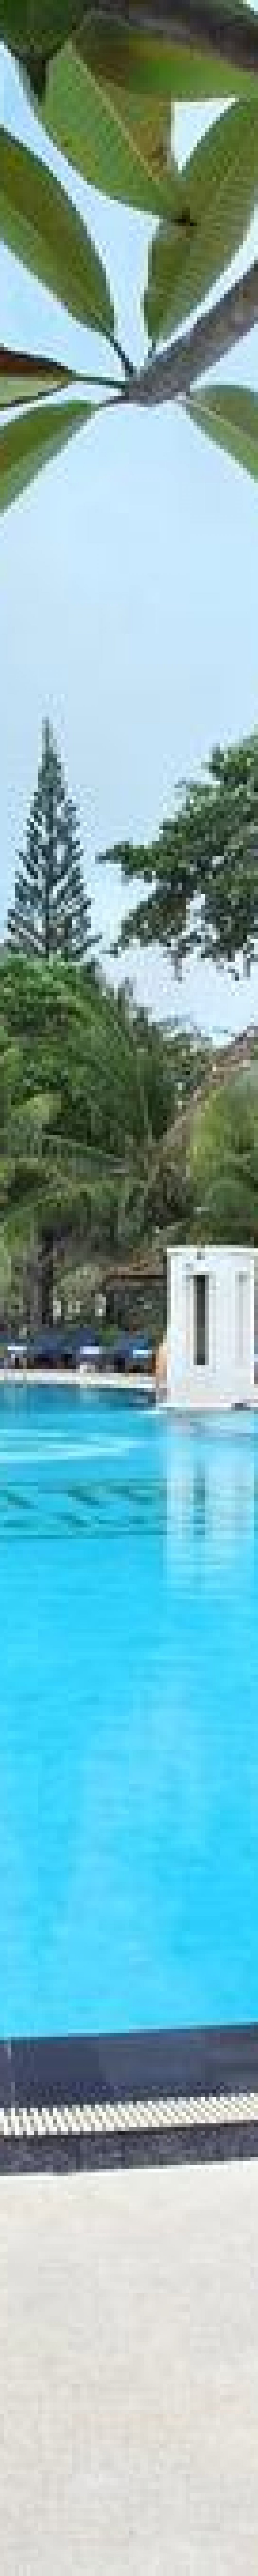 tanjung benoa resort, bali tropic resort, swimming pool, bali tropic resort swimming pool